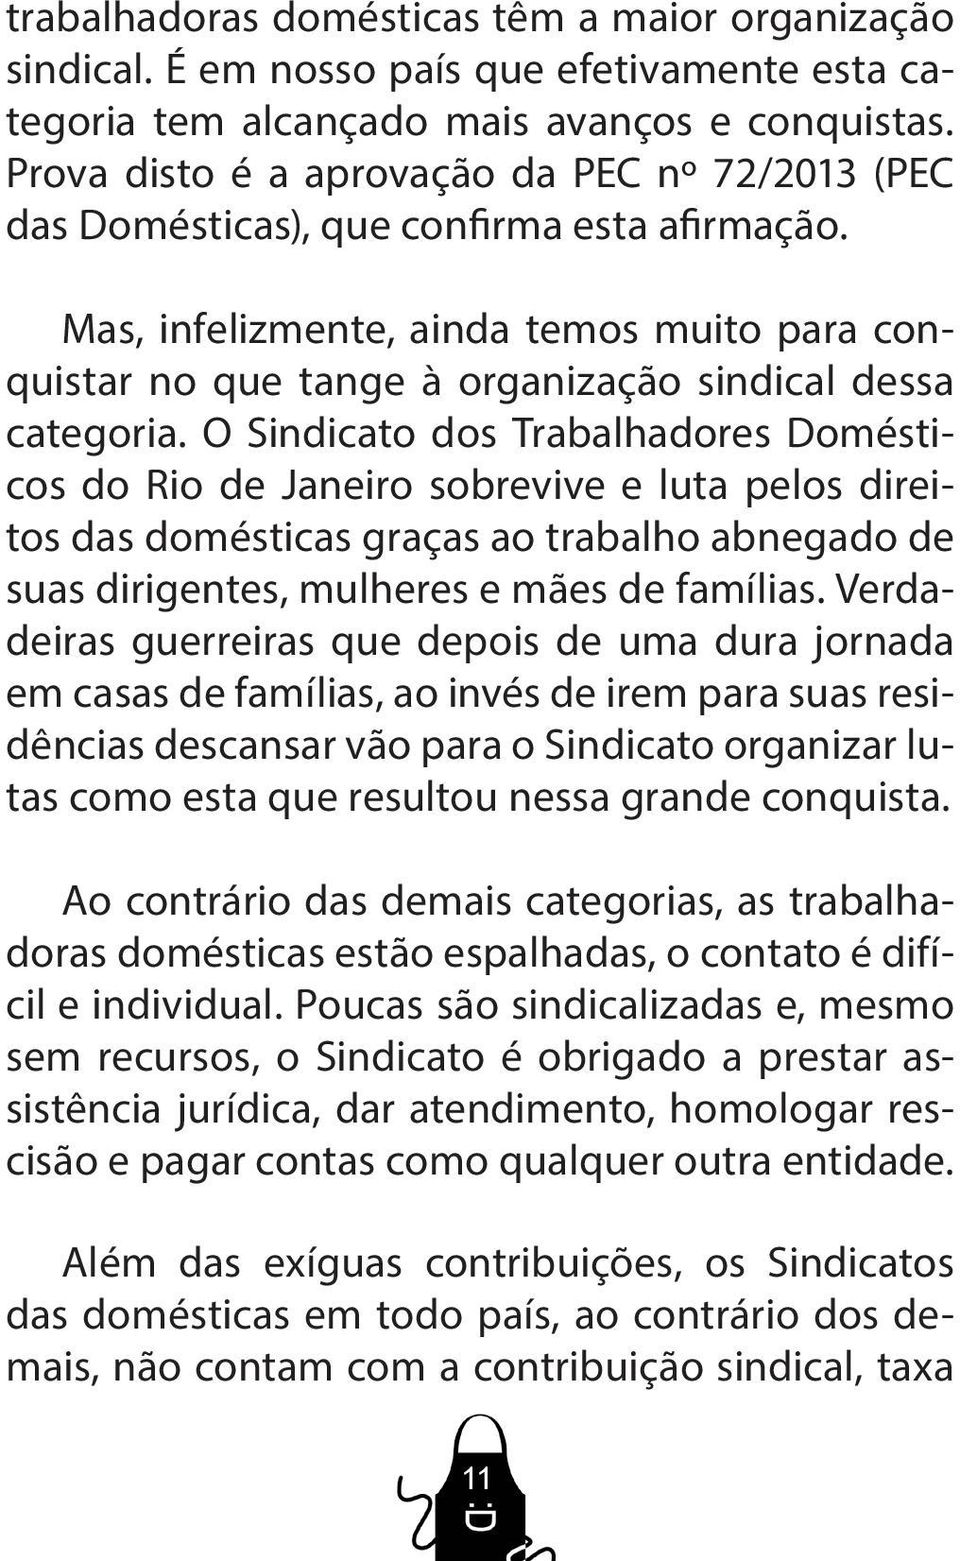 O Sindicato dos Trabalhadores Domésticos do Rio de Janeiro sobrevive e luta pelos direitos das domésticas graças ao trabalho abnegado de suas dirigentes, mulheres e mães de famílias.